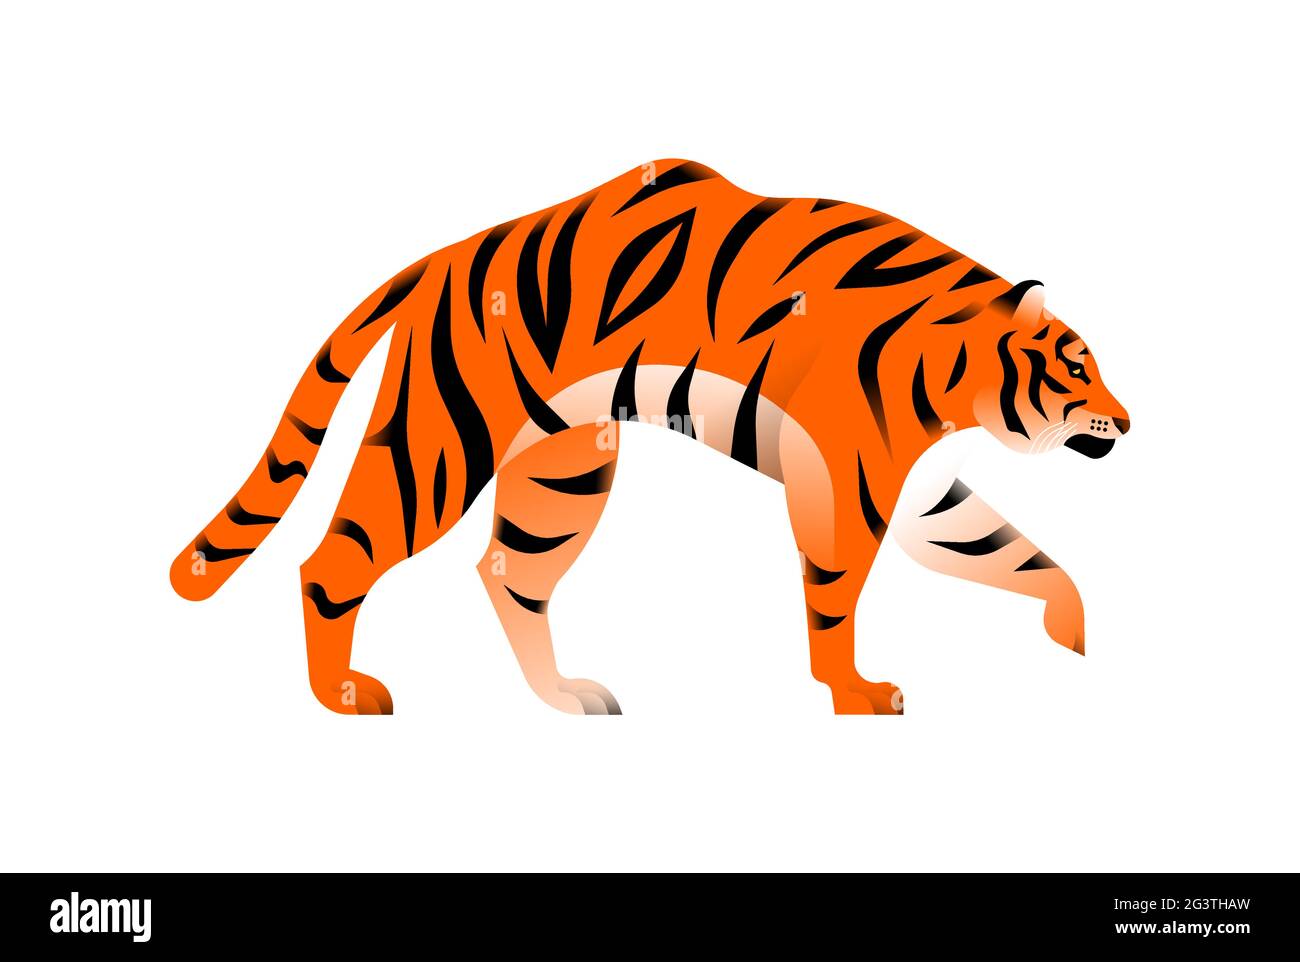 Illustrazione della tigre del Bengala su sfondo bianco isolato. Esotico concetto di animali della giungla in pericolo. Design educativo della fauna selvatica in stile moderno cartone animato. Illustrazione Vettoriale